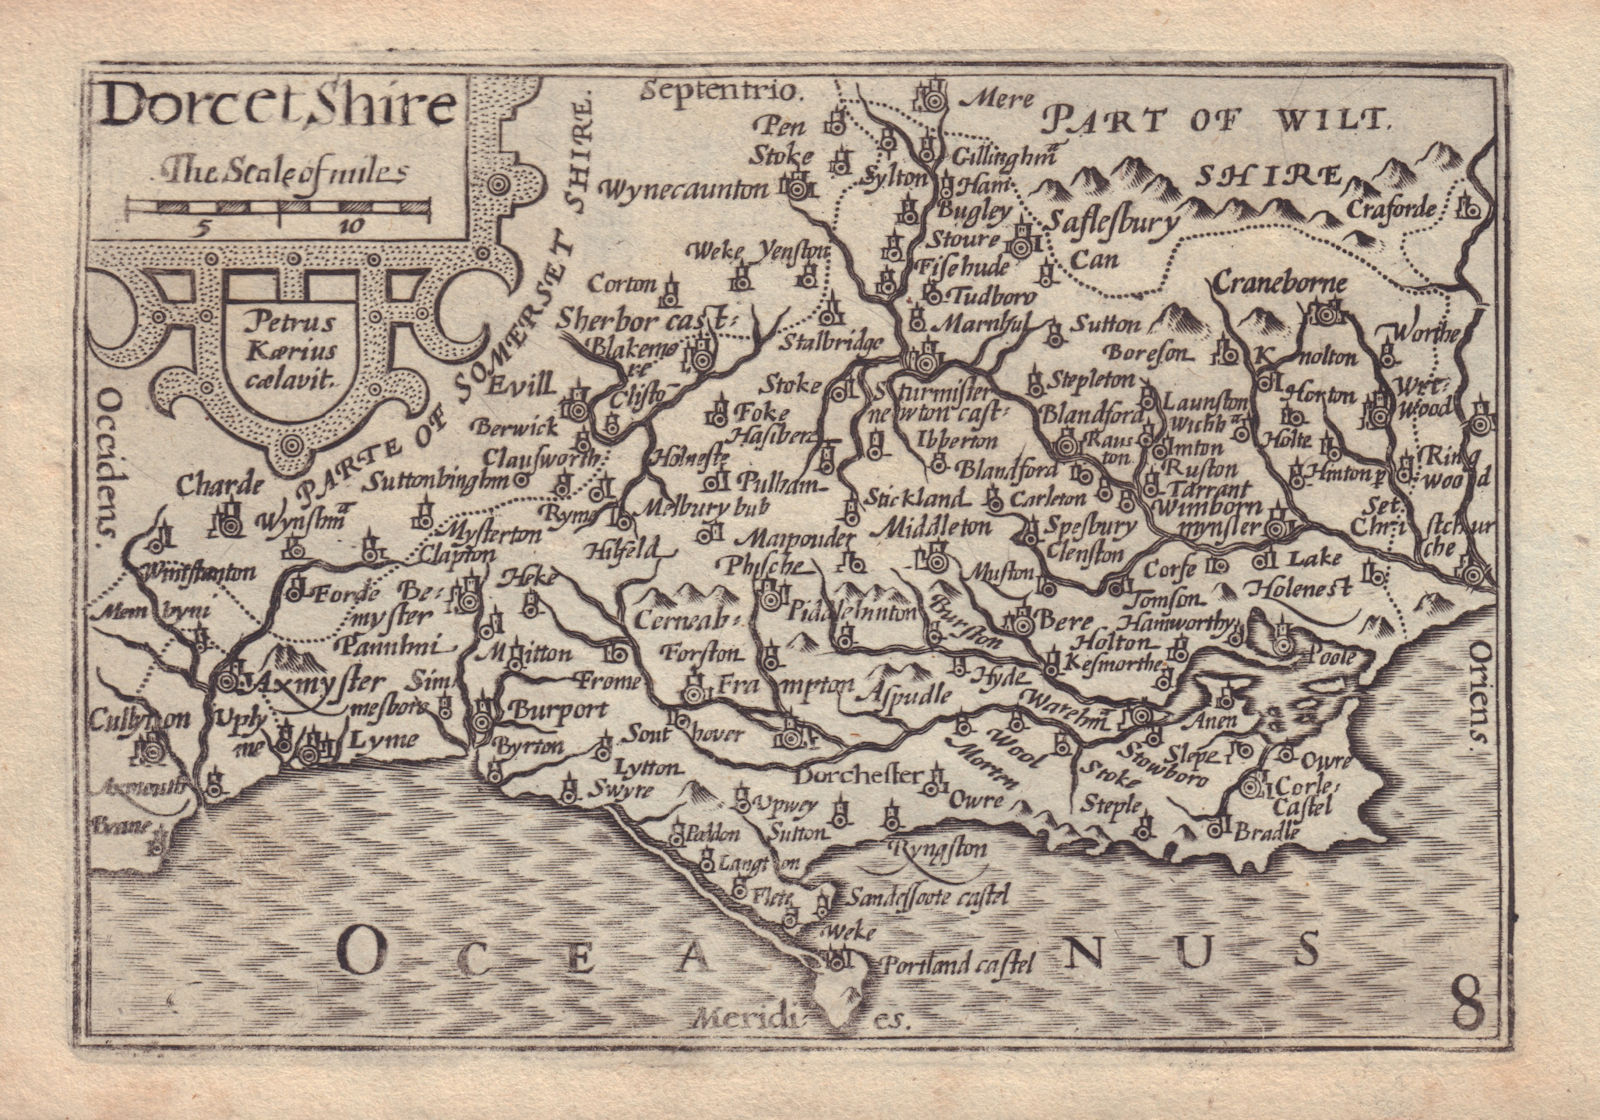 Associate Product Dorcetshire by van den Keere. "Speed miniature" Dorset county map 1632 old